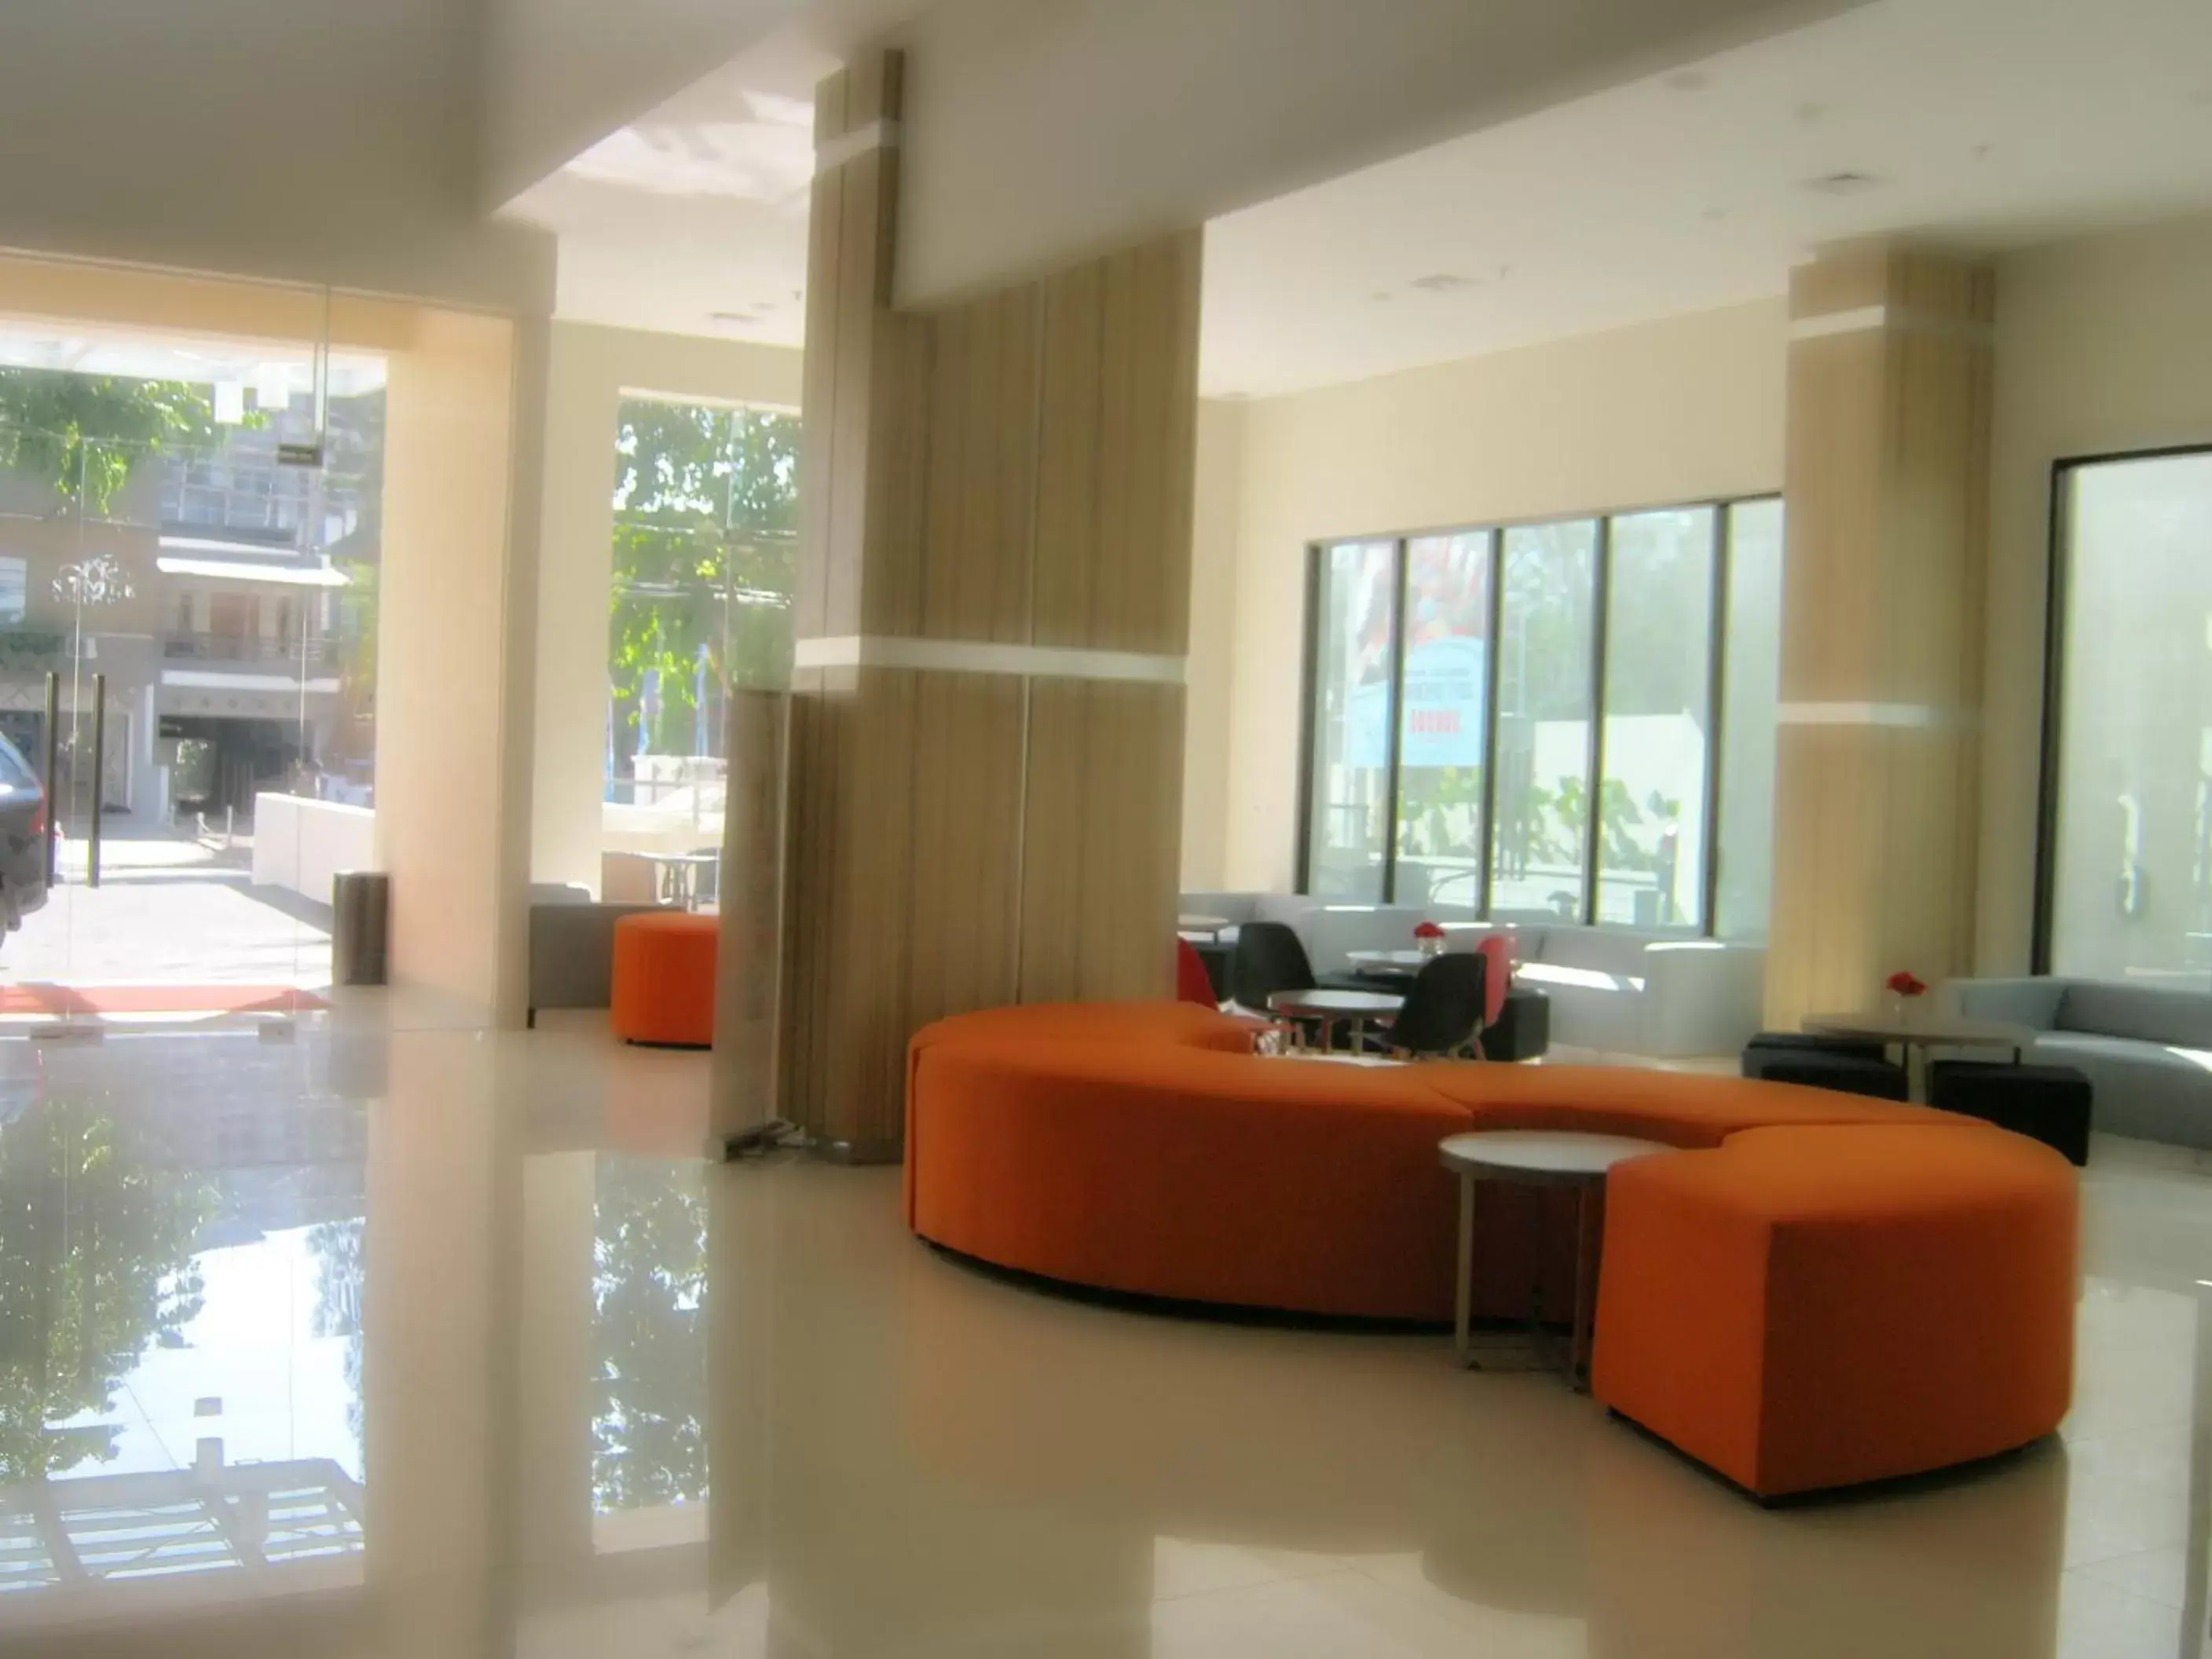 Lobby or reception in Cordela Hotel Cirebon